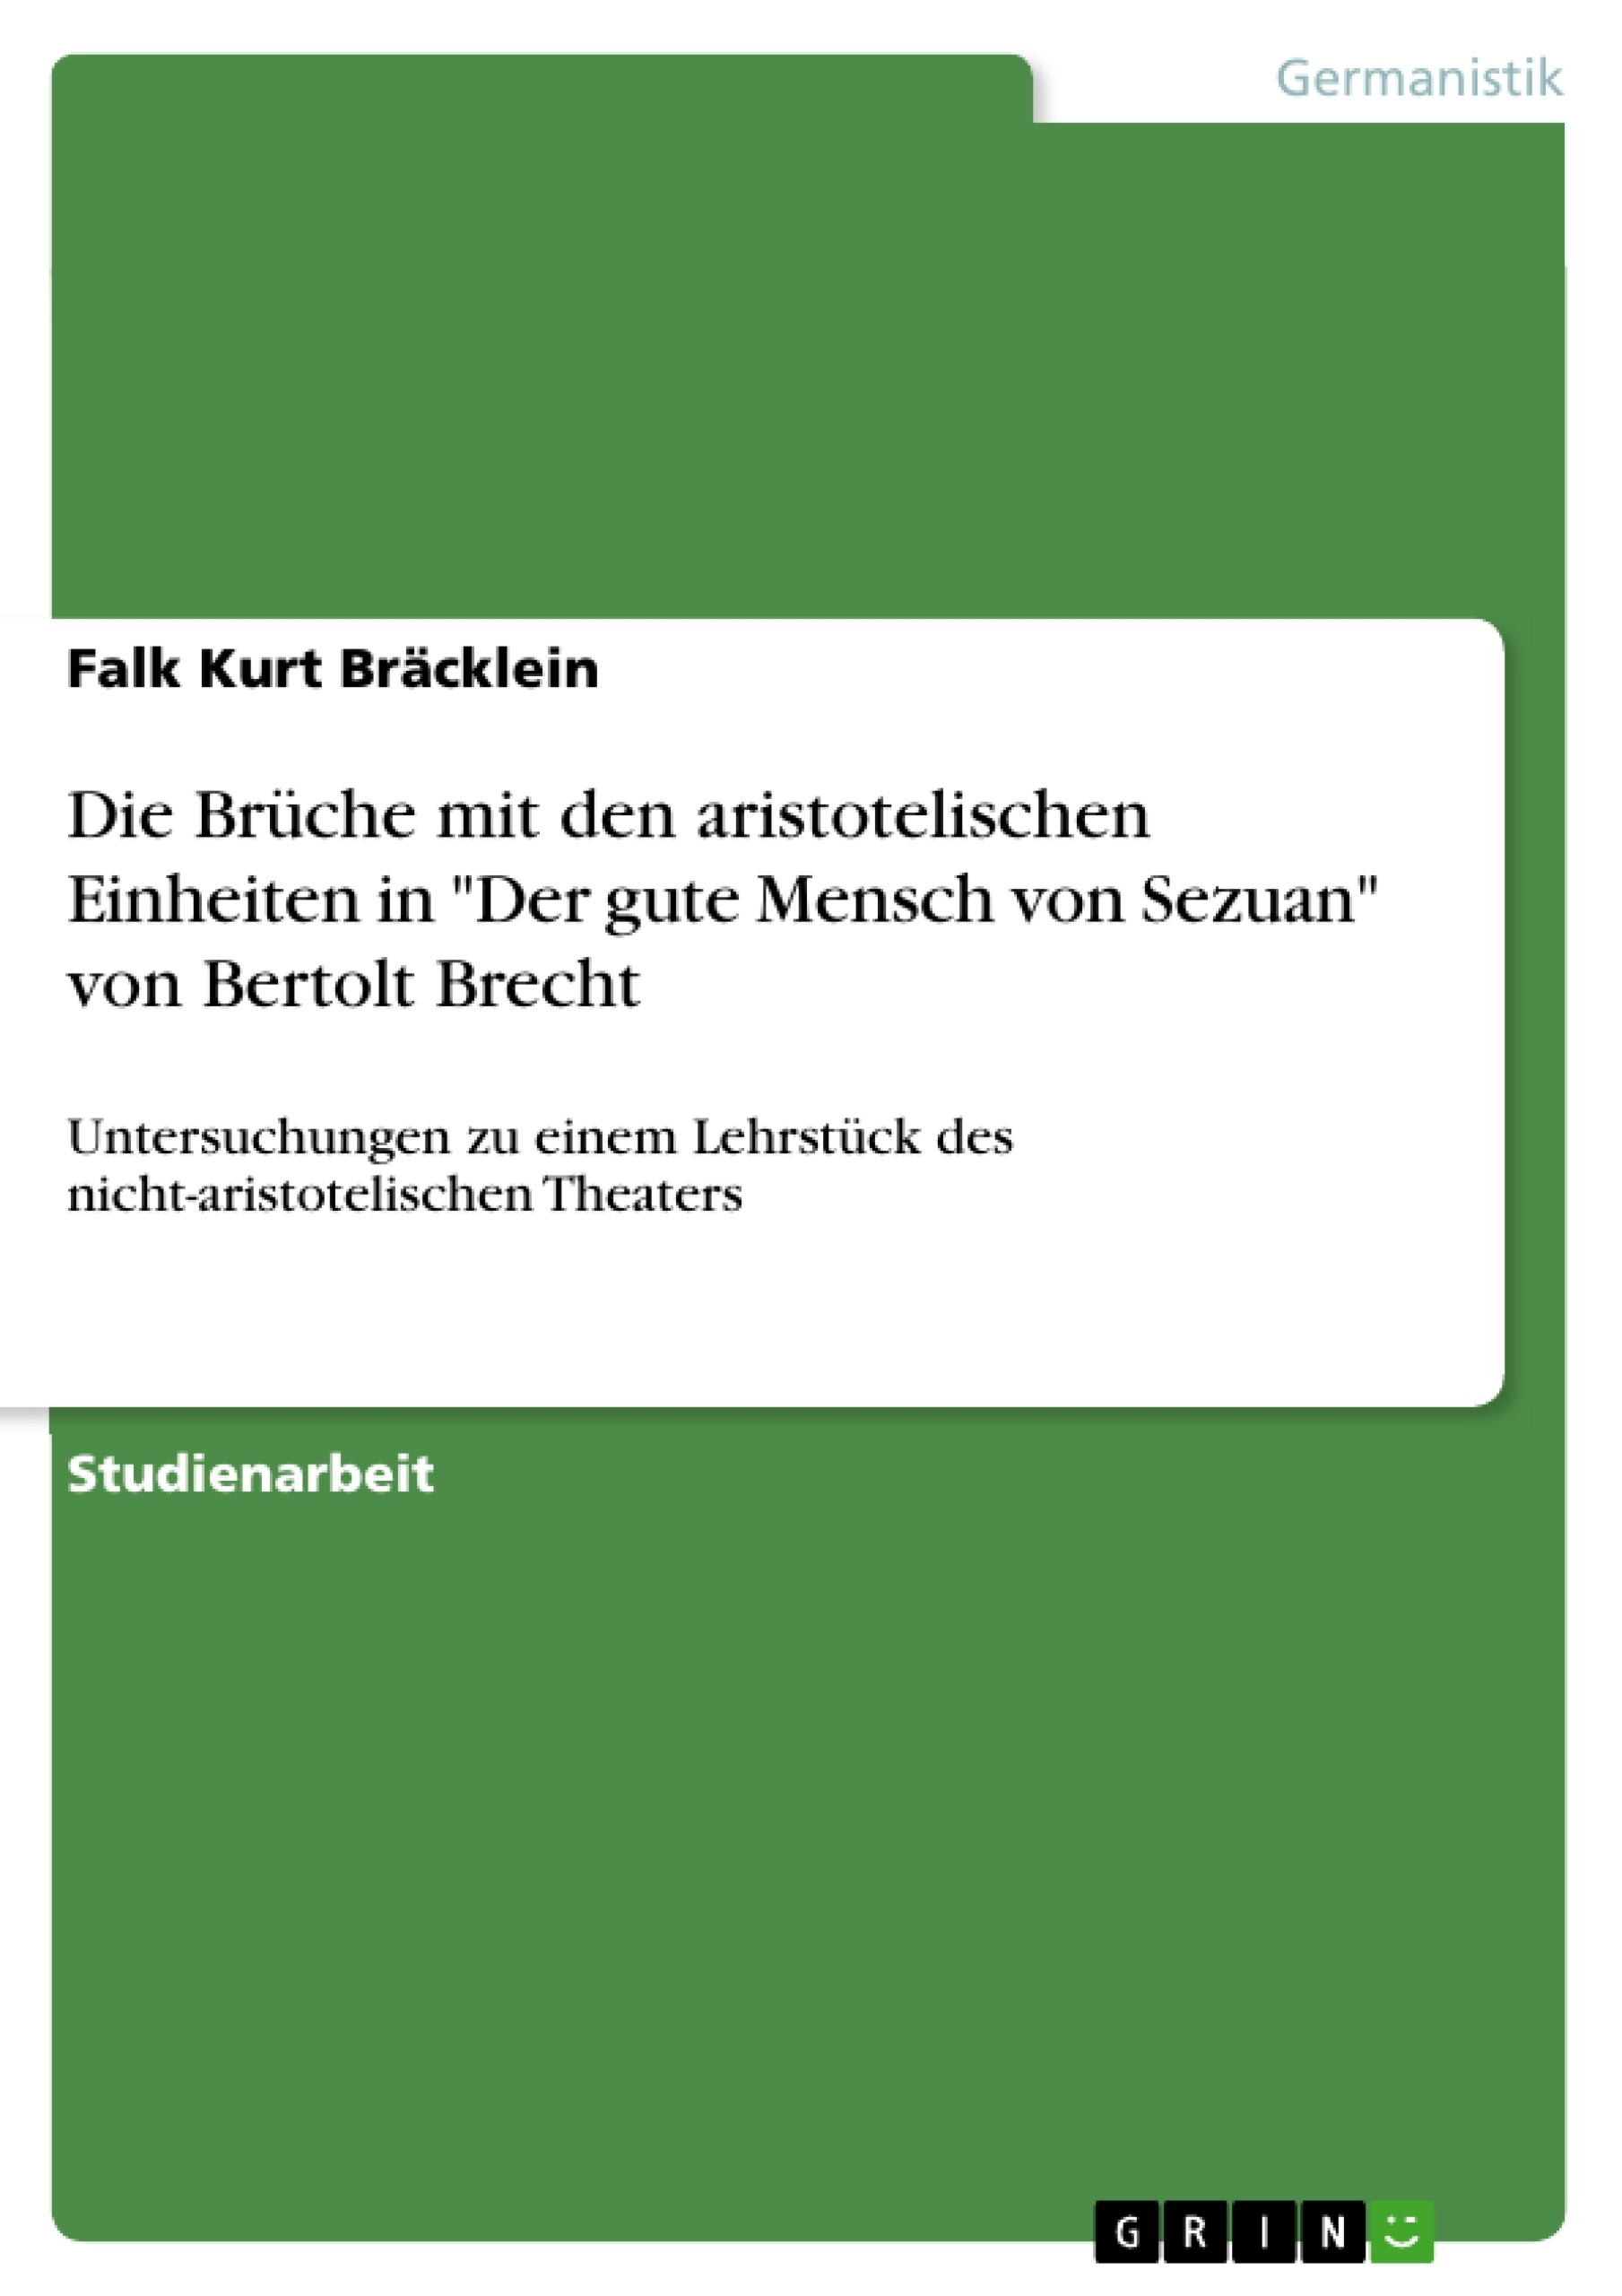 Title: Die Brüche mit den aristotelischen Einheiten in "Der gute Mensch von Sezuan" von Bertolt Brecht